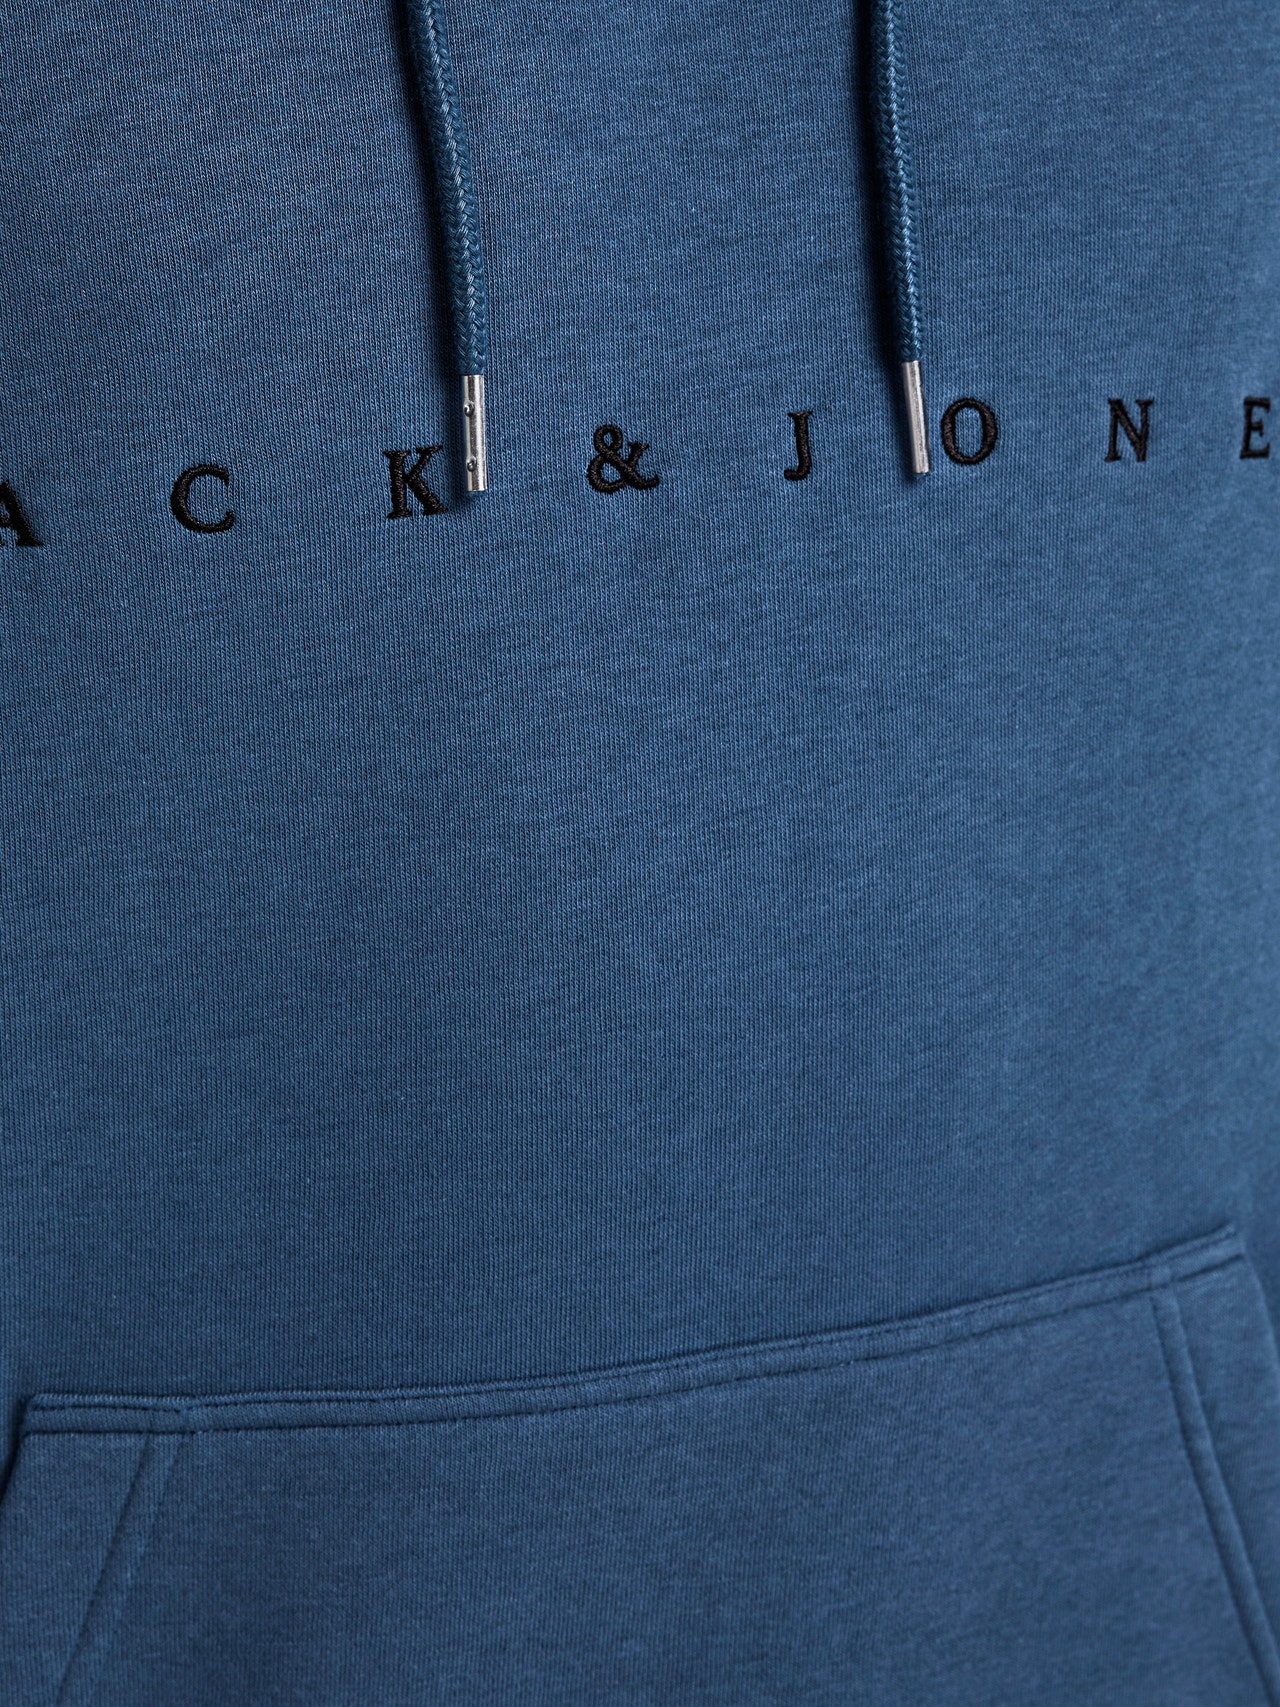 Jack & Jones Z logo Bluza z kapturem -Ensign Blue - 12176864